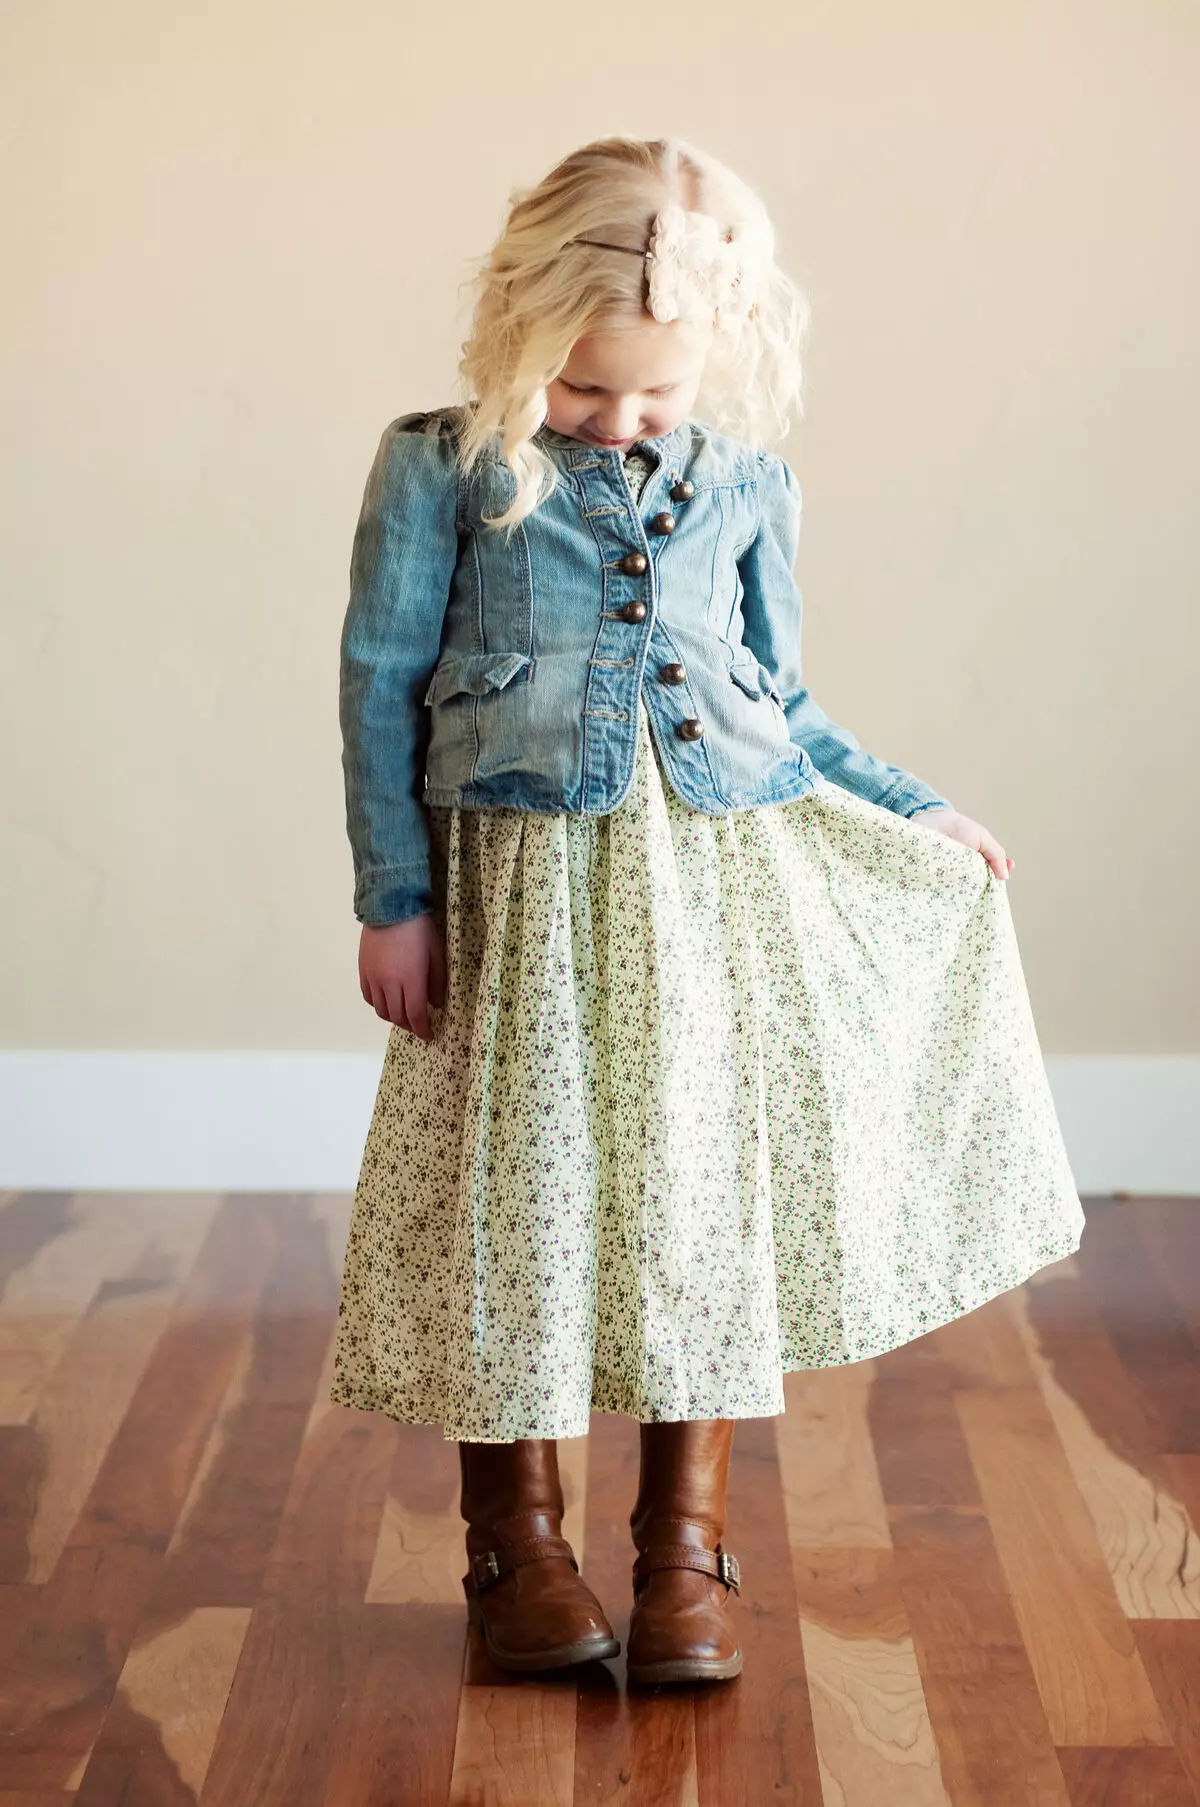 Jaqueta Denim infantil para uma menina (49) Foto: O que vestir, padrões de jeans antigos 14394_14